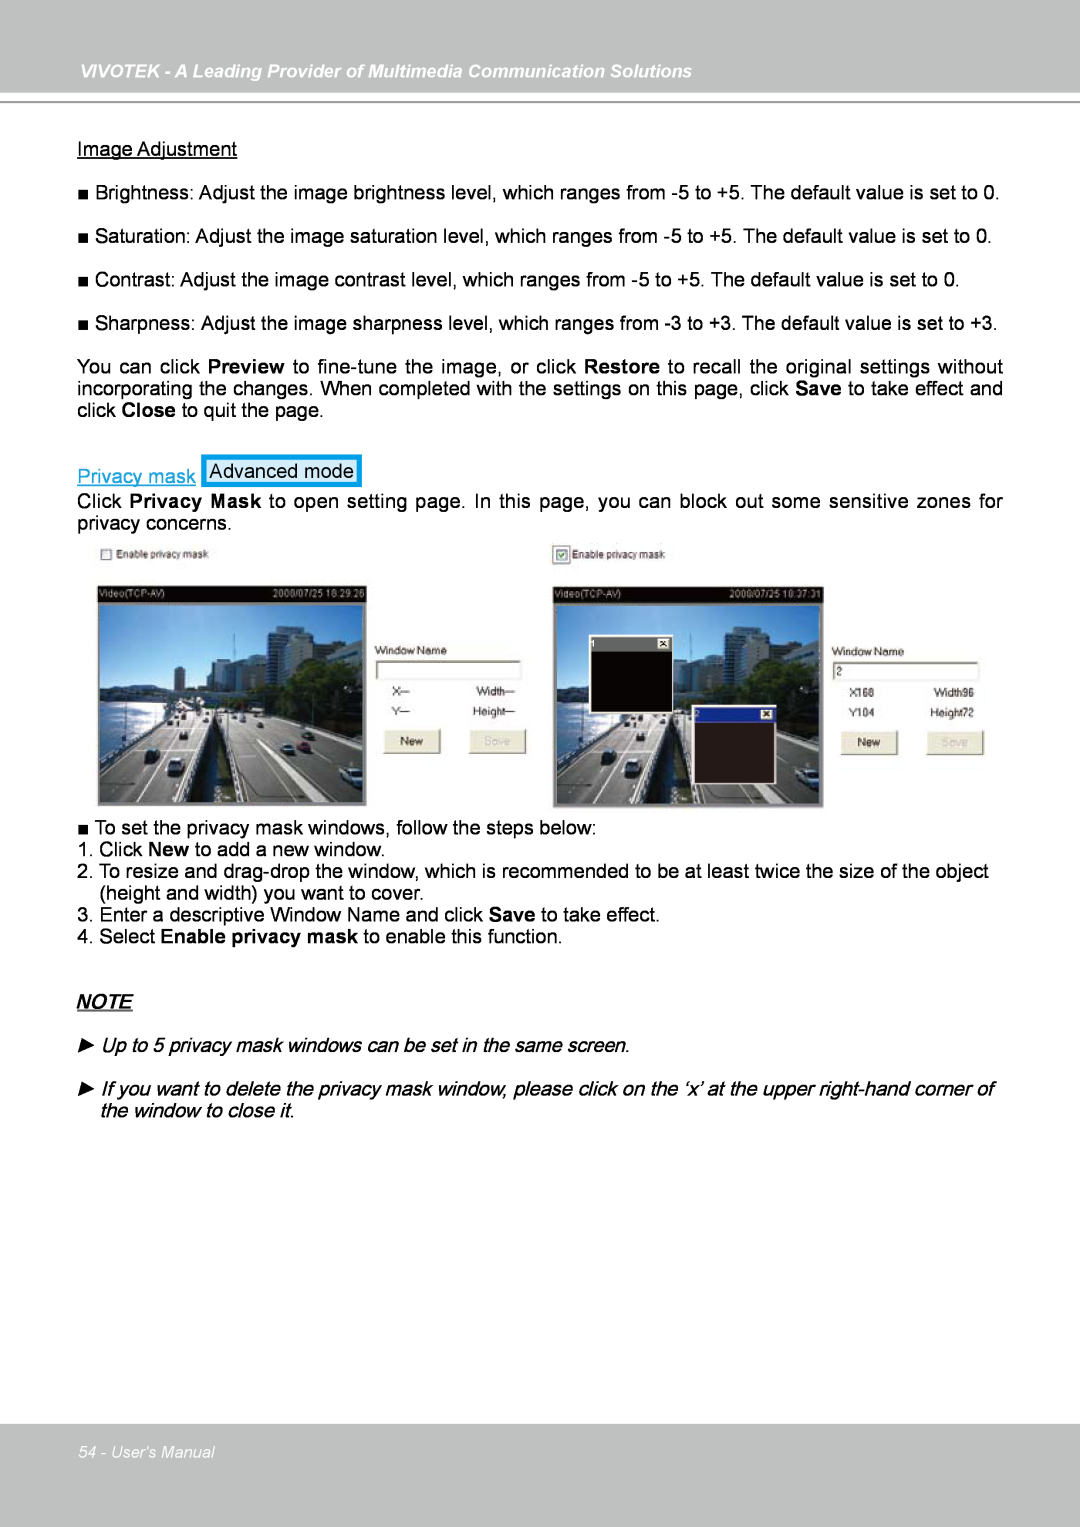 Vivotek FD7141(V) manual Image Adjustment, Privacy mask 